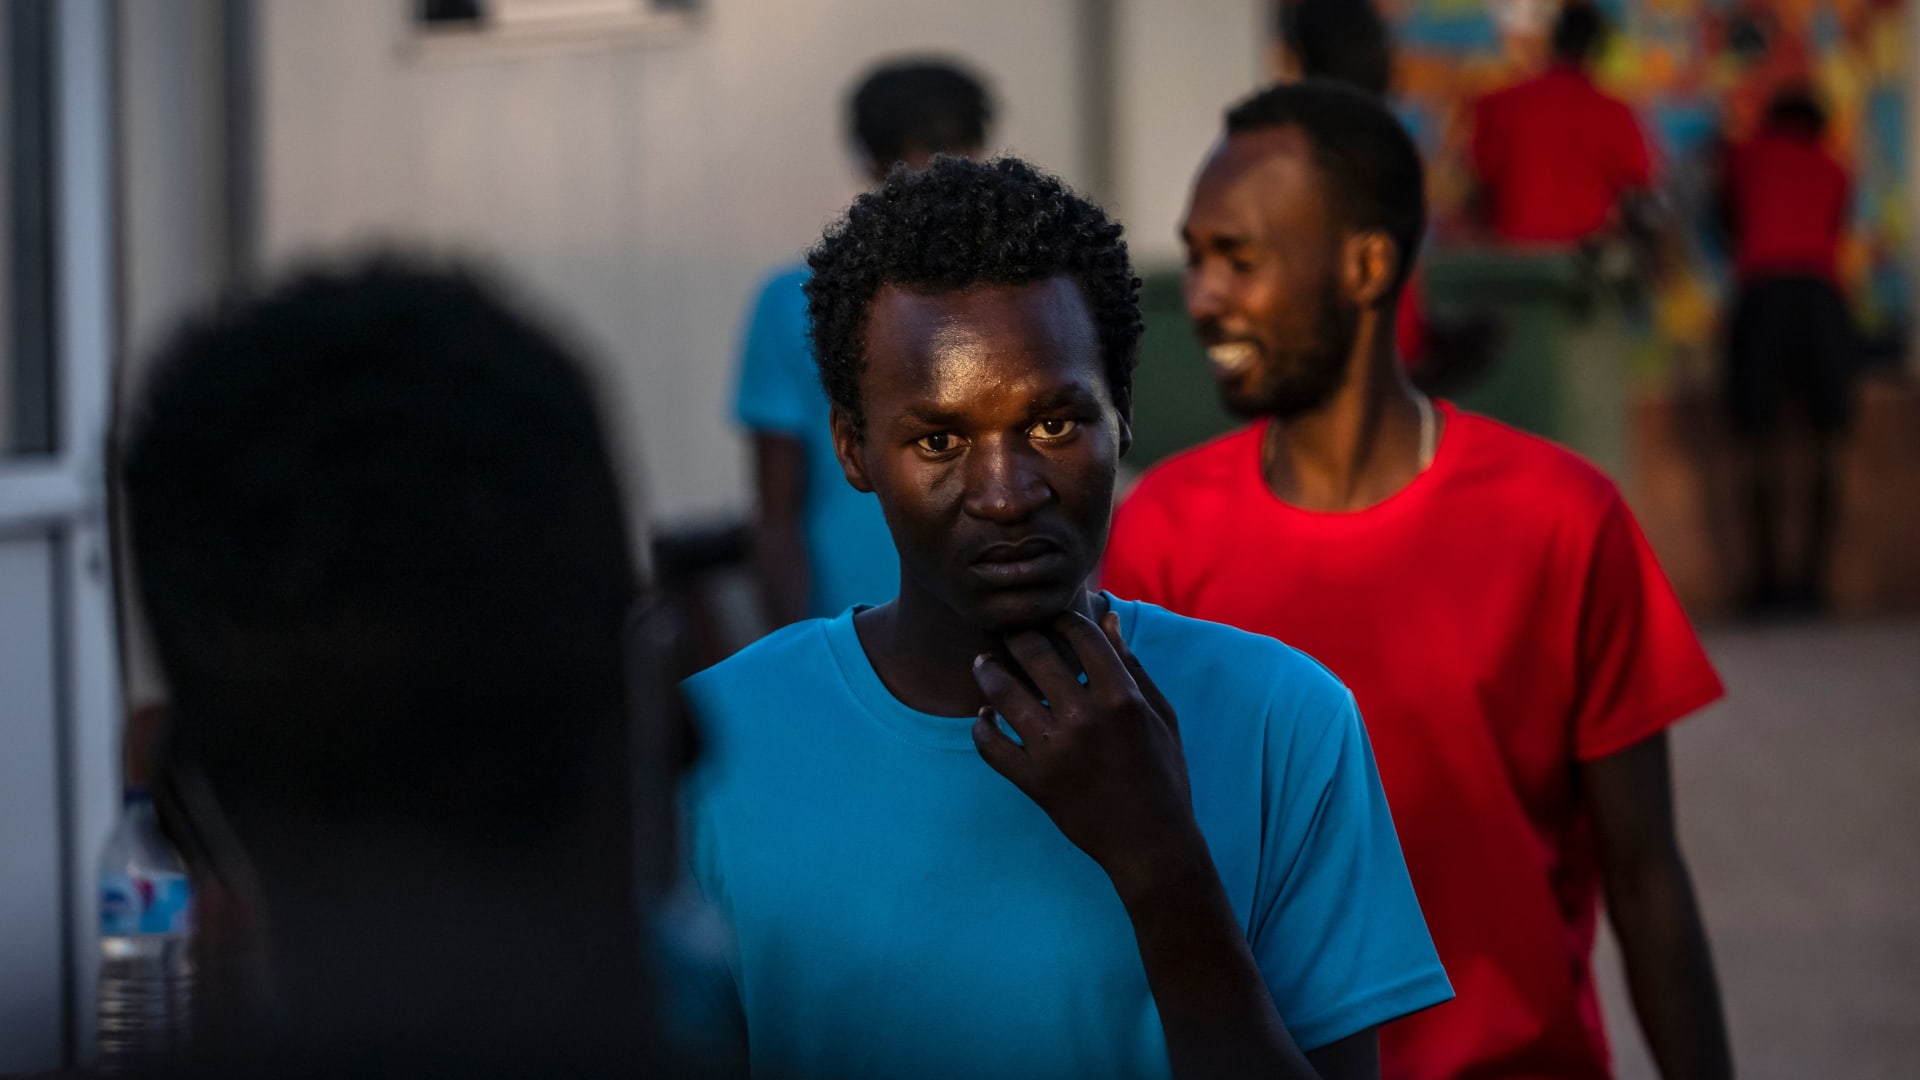 5000 مهاجر غير شرعي يسبحون من المغرب إلى جيب سبتة الإسباني